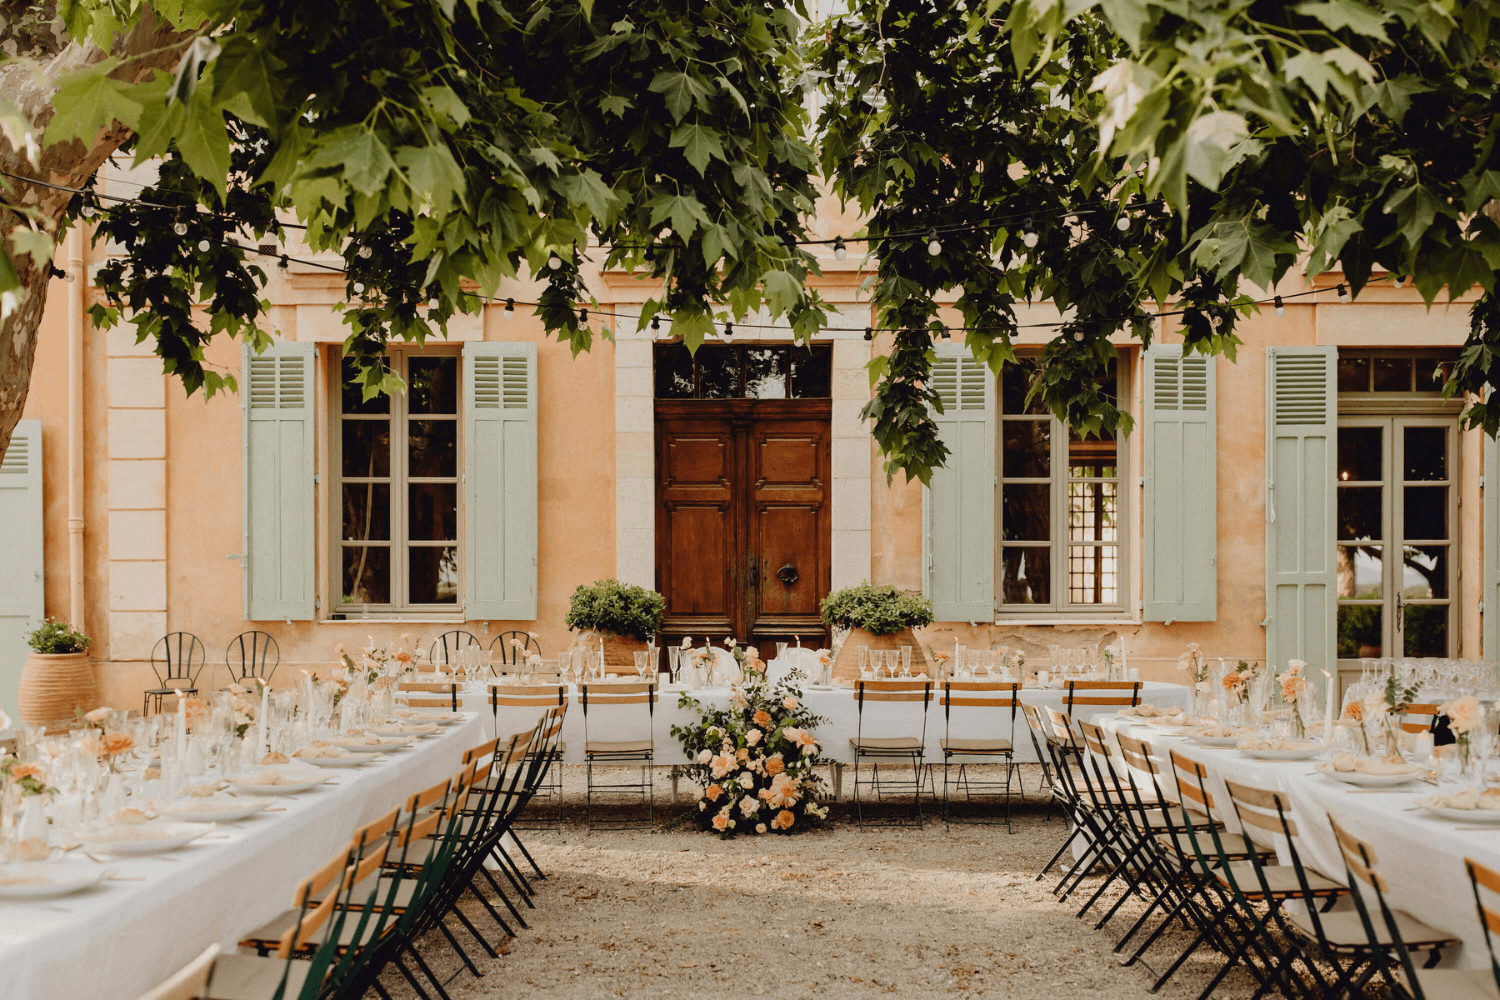 De grandes tables de mariage installées dans une cour extérieure, devant une maison avec des volets peints en vert d’eau.